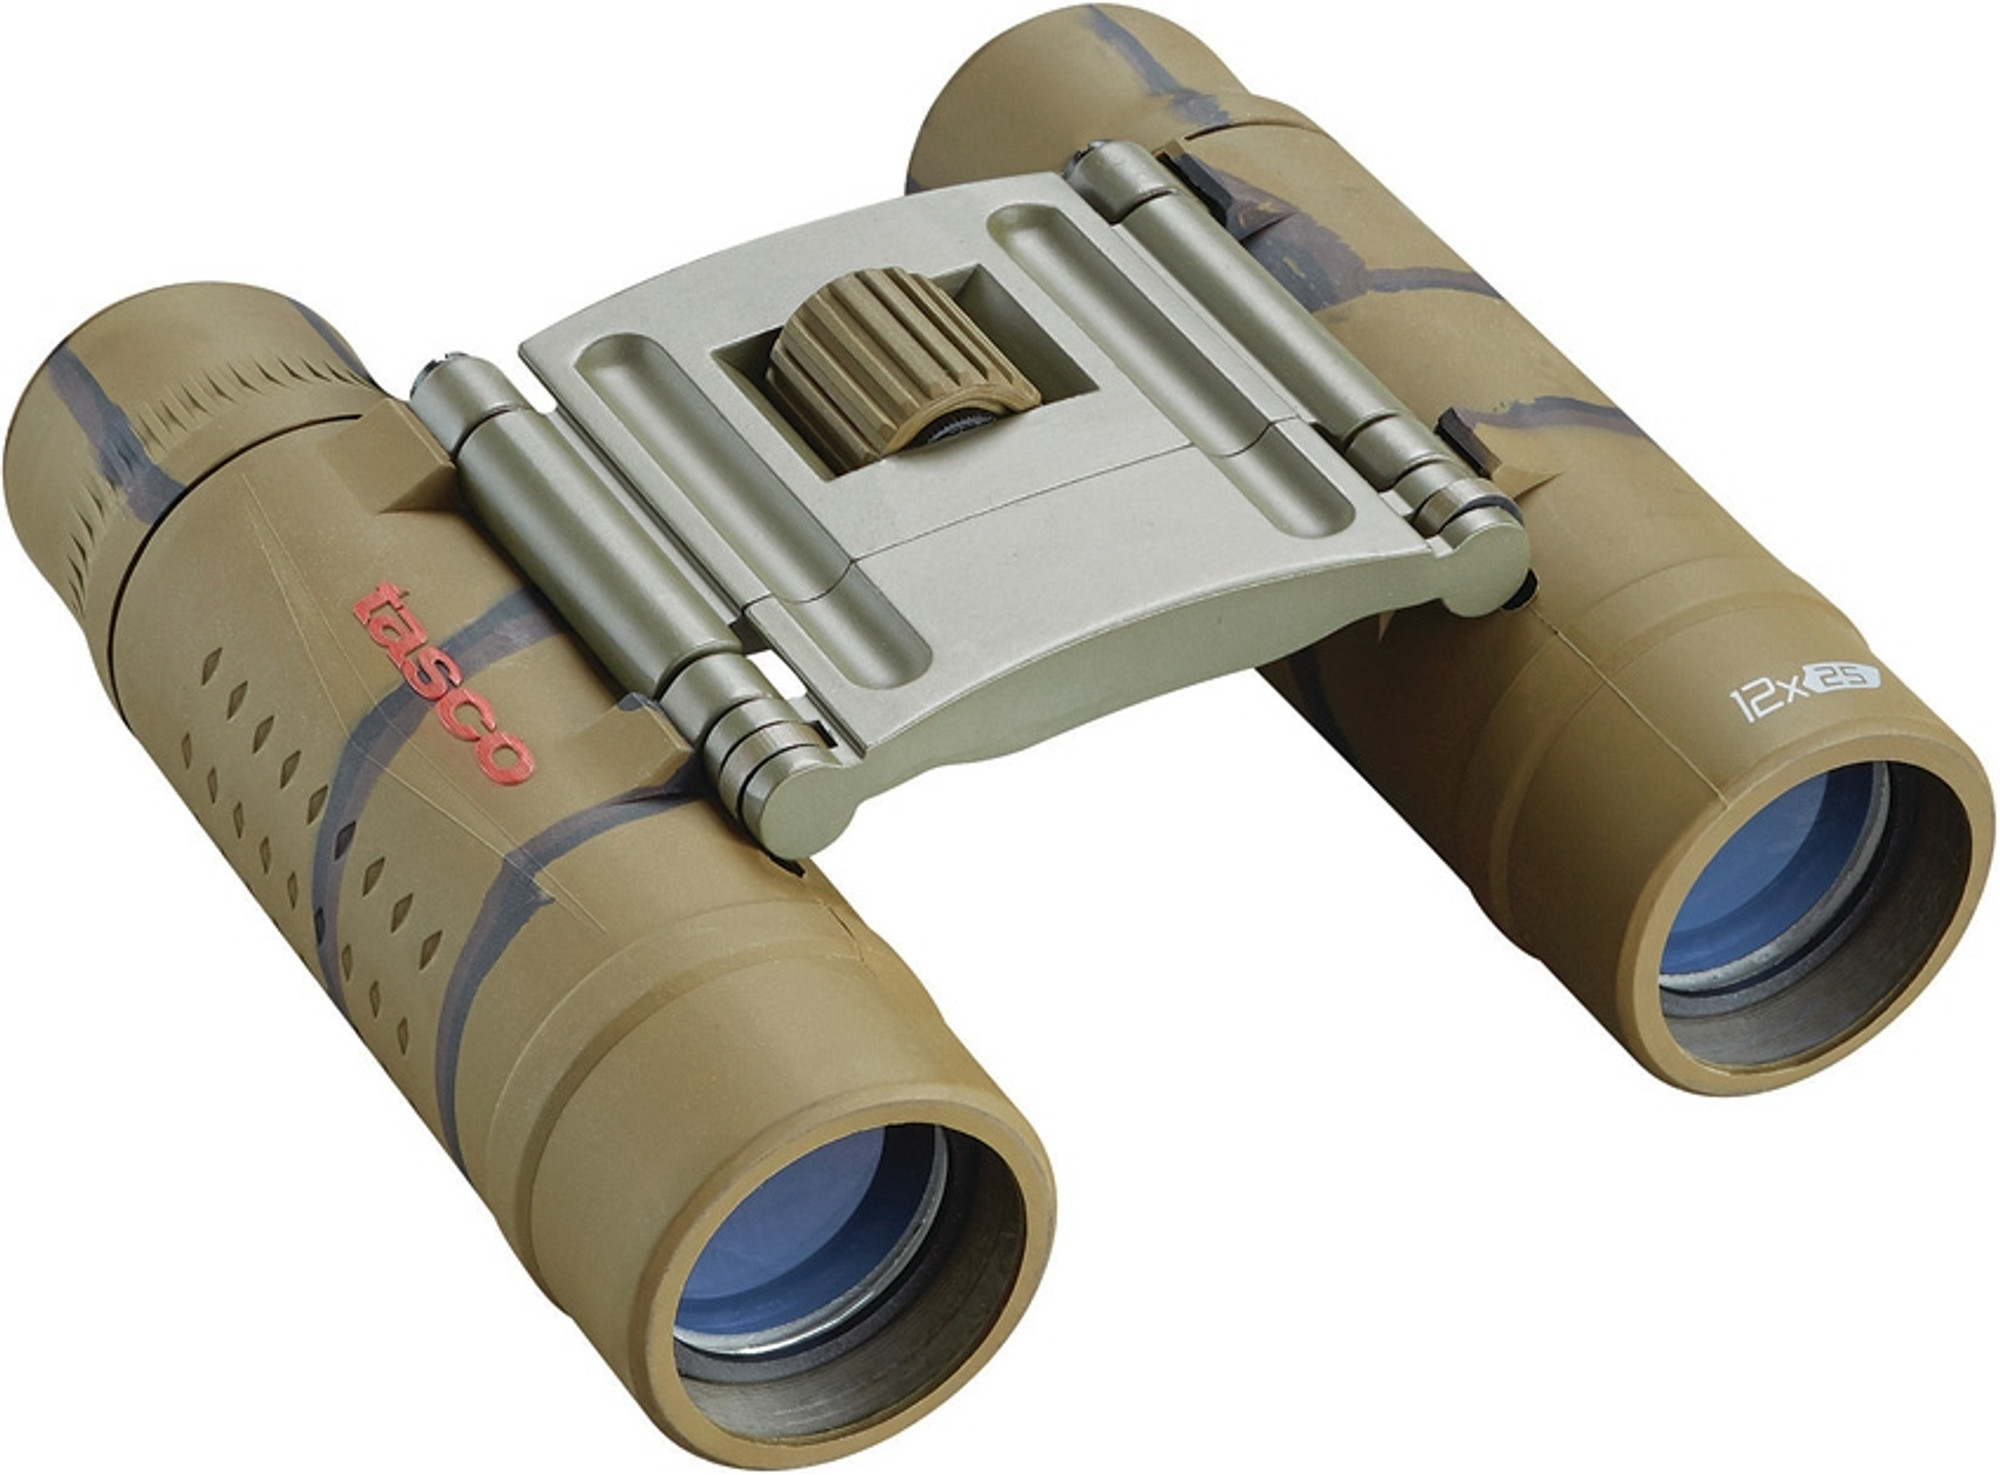 Essentials Binoculars 12x25 (Color: Camo)